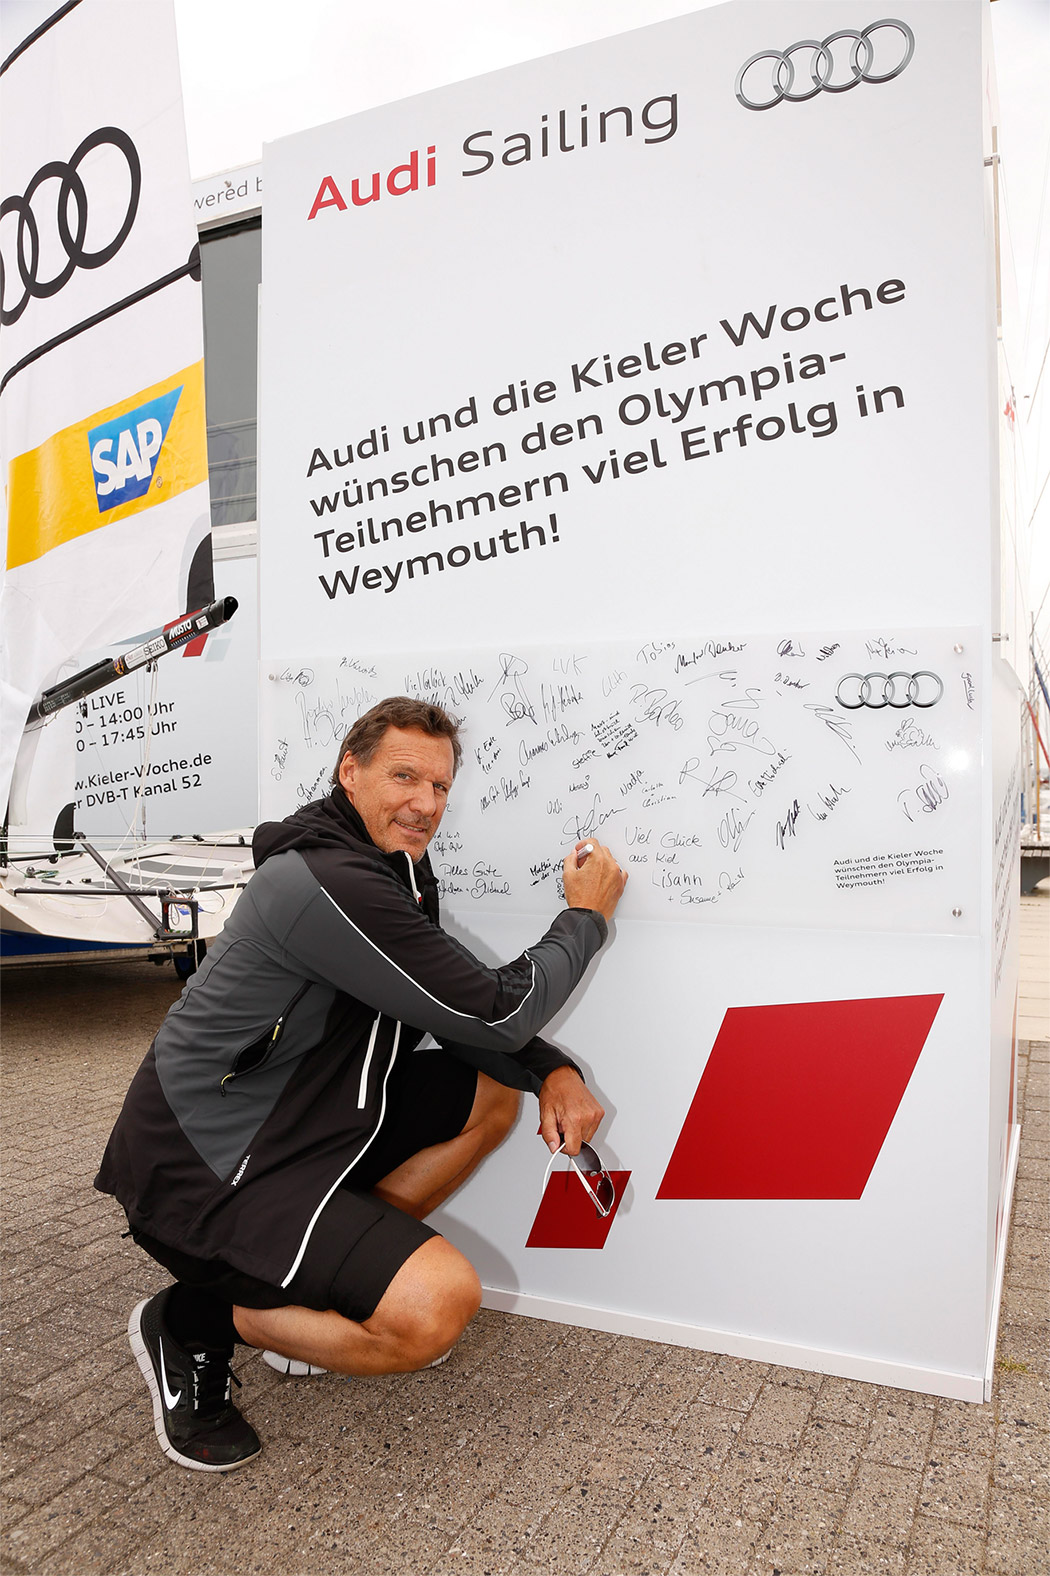 ラルフ·メラー氏 (Ralf Möller) - Audiセーリングの推薦状